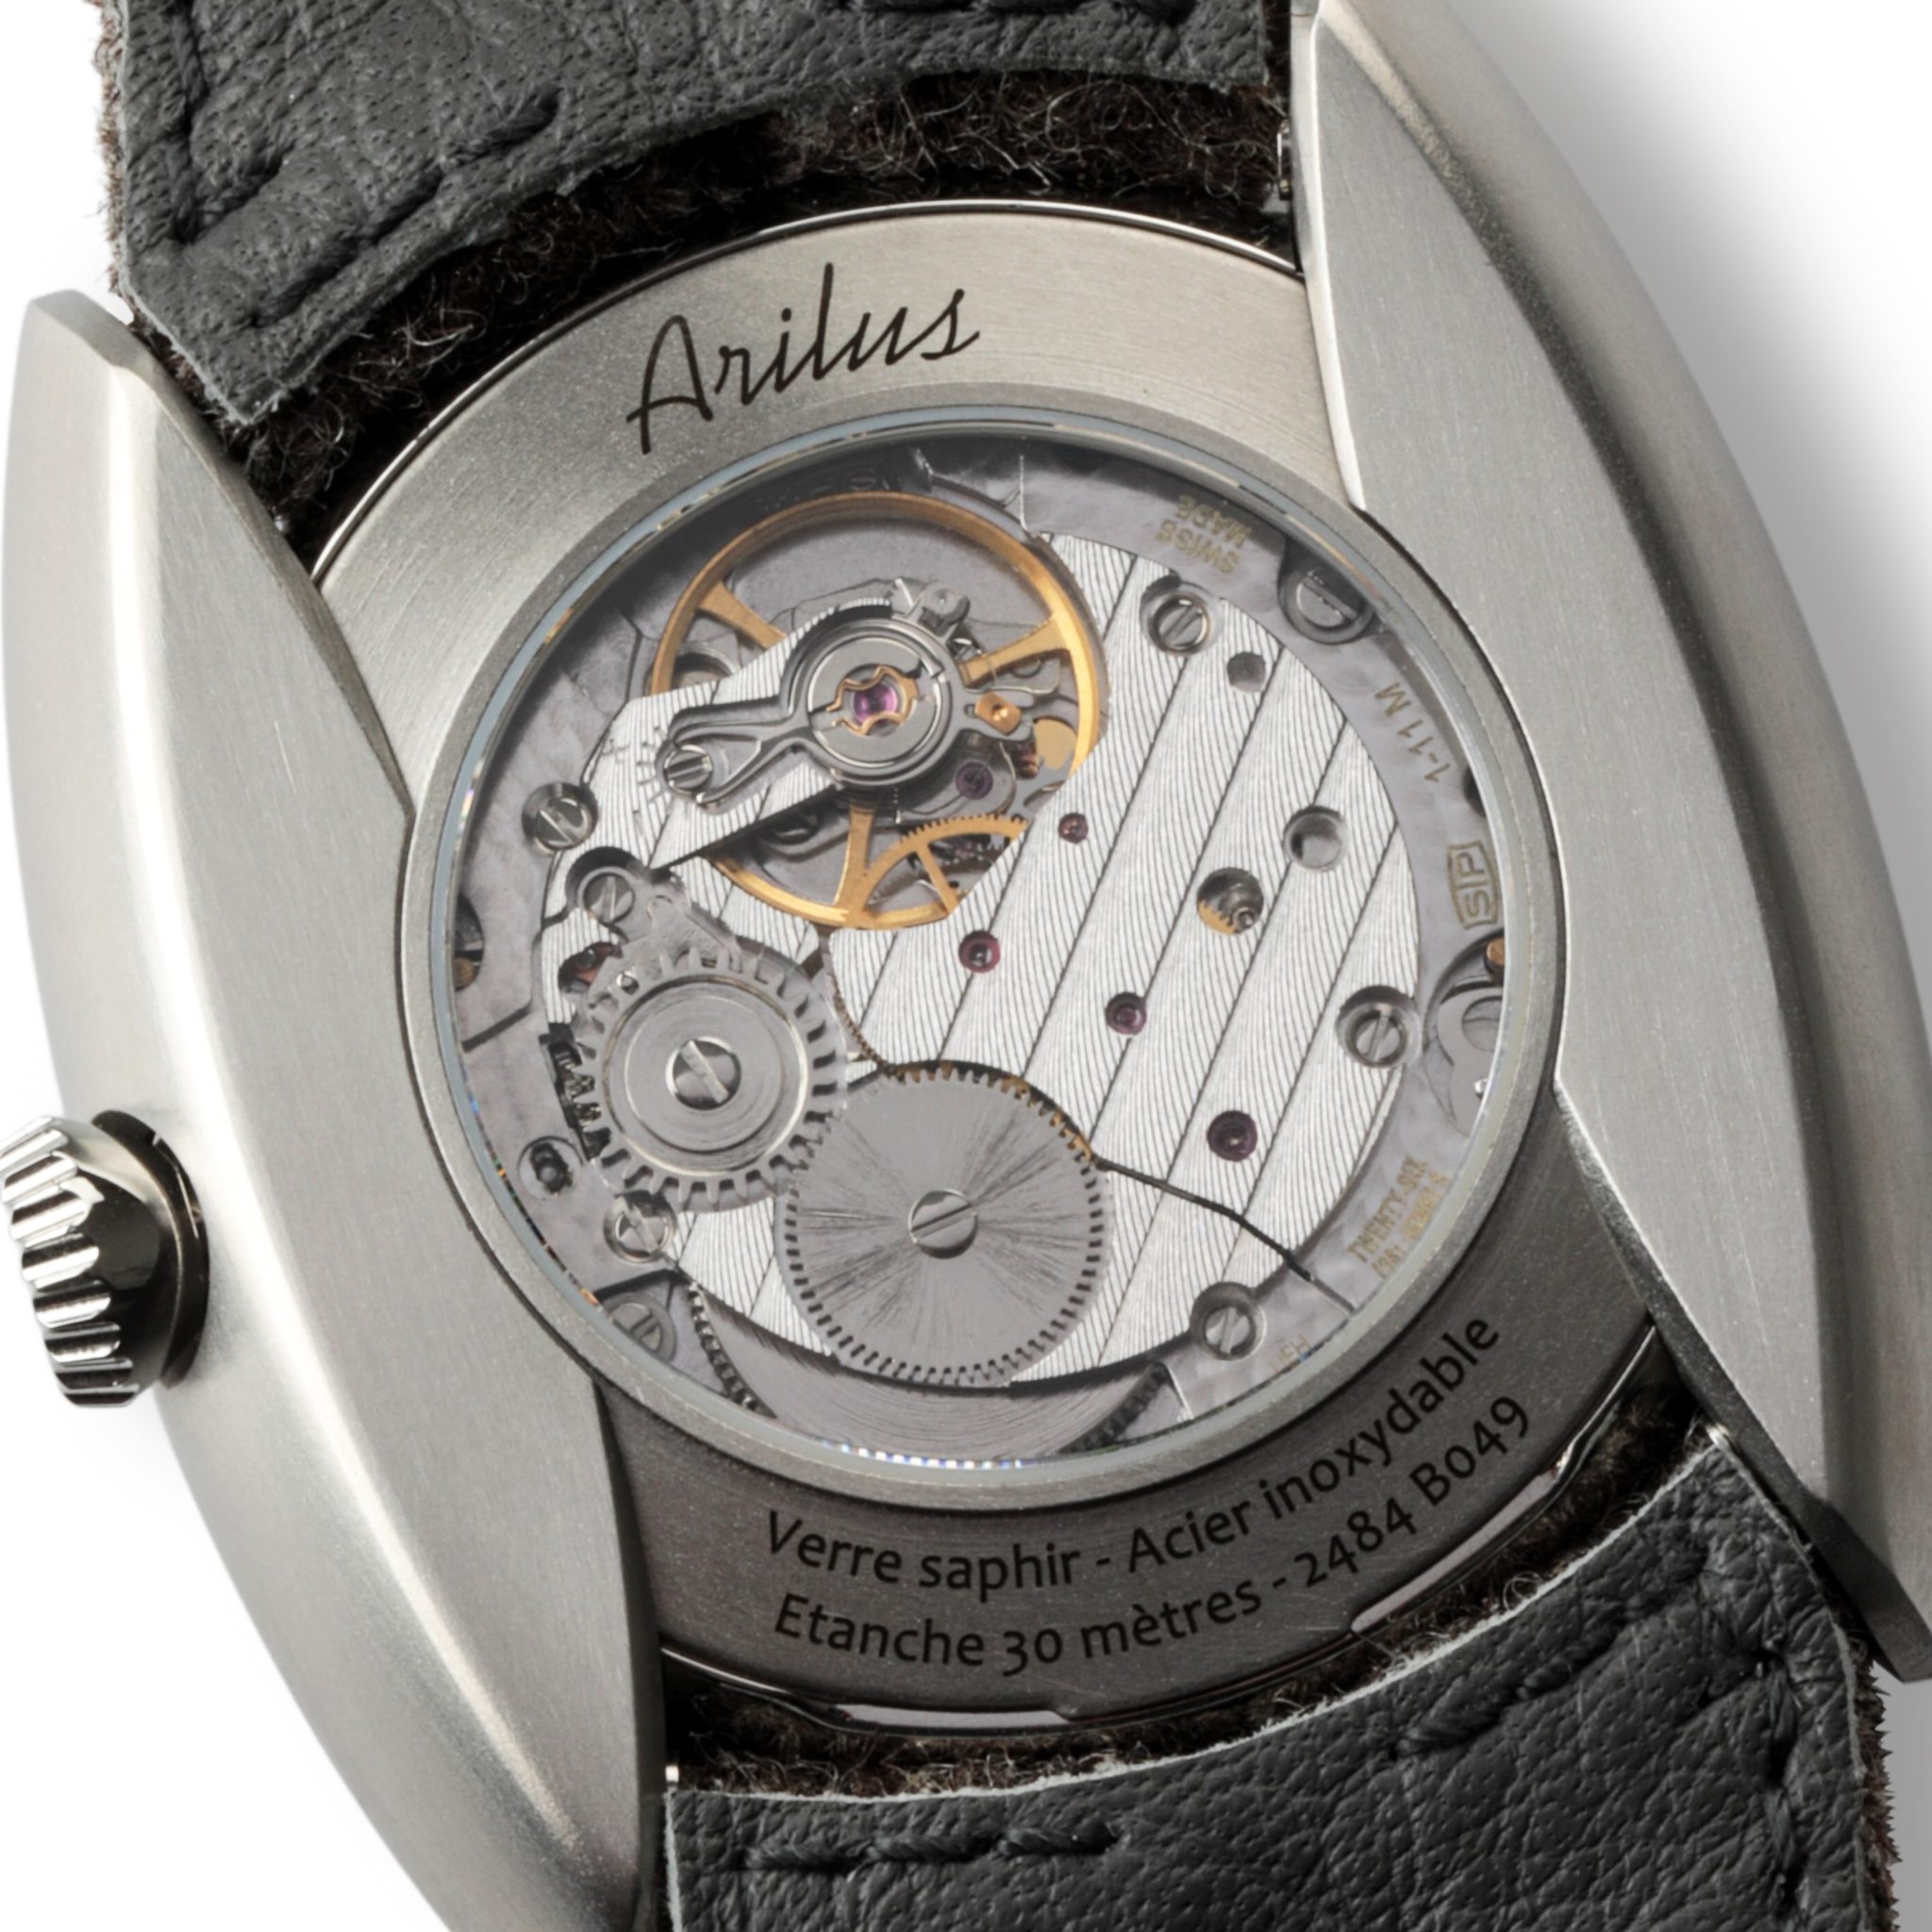 ARILUS MONTRE ARDOISE VUE MOUVEMENT SUISSE STP1-11M -JPG HD-1, montre fabriquée en france, montre made in france, montre fabriquée en Savoie, montres à la française